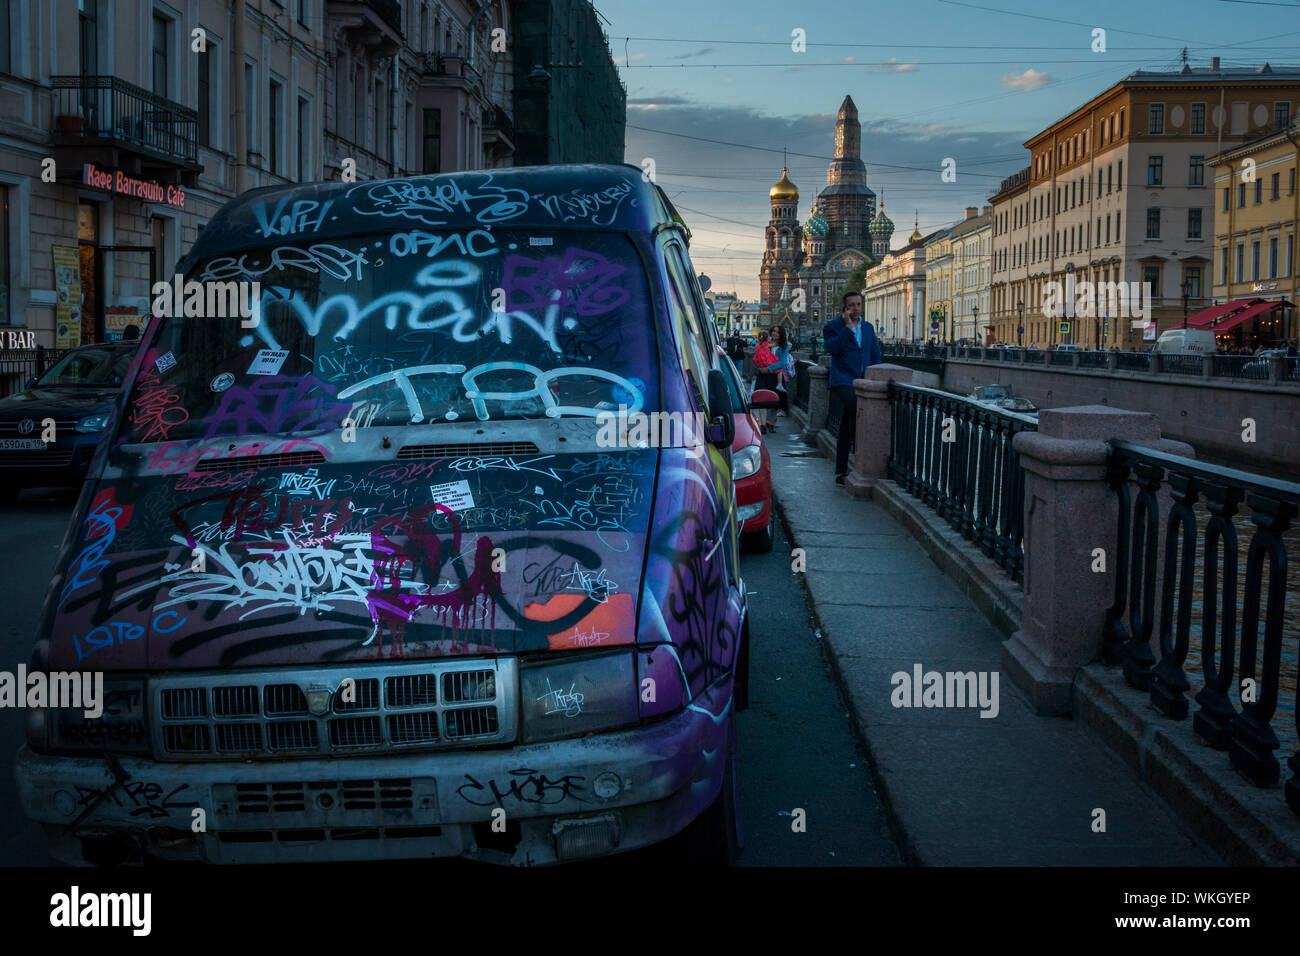 Immagine giustapposti di auto coperto di graffiti sul canale Griboyedova embankment street con la chiesa del sangue versato in background, San Pietroburgo, Foto Stock